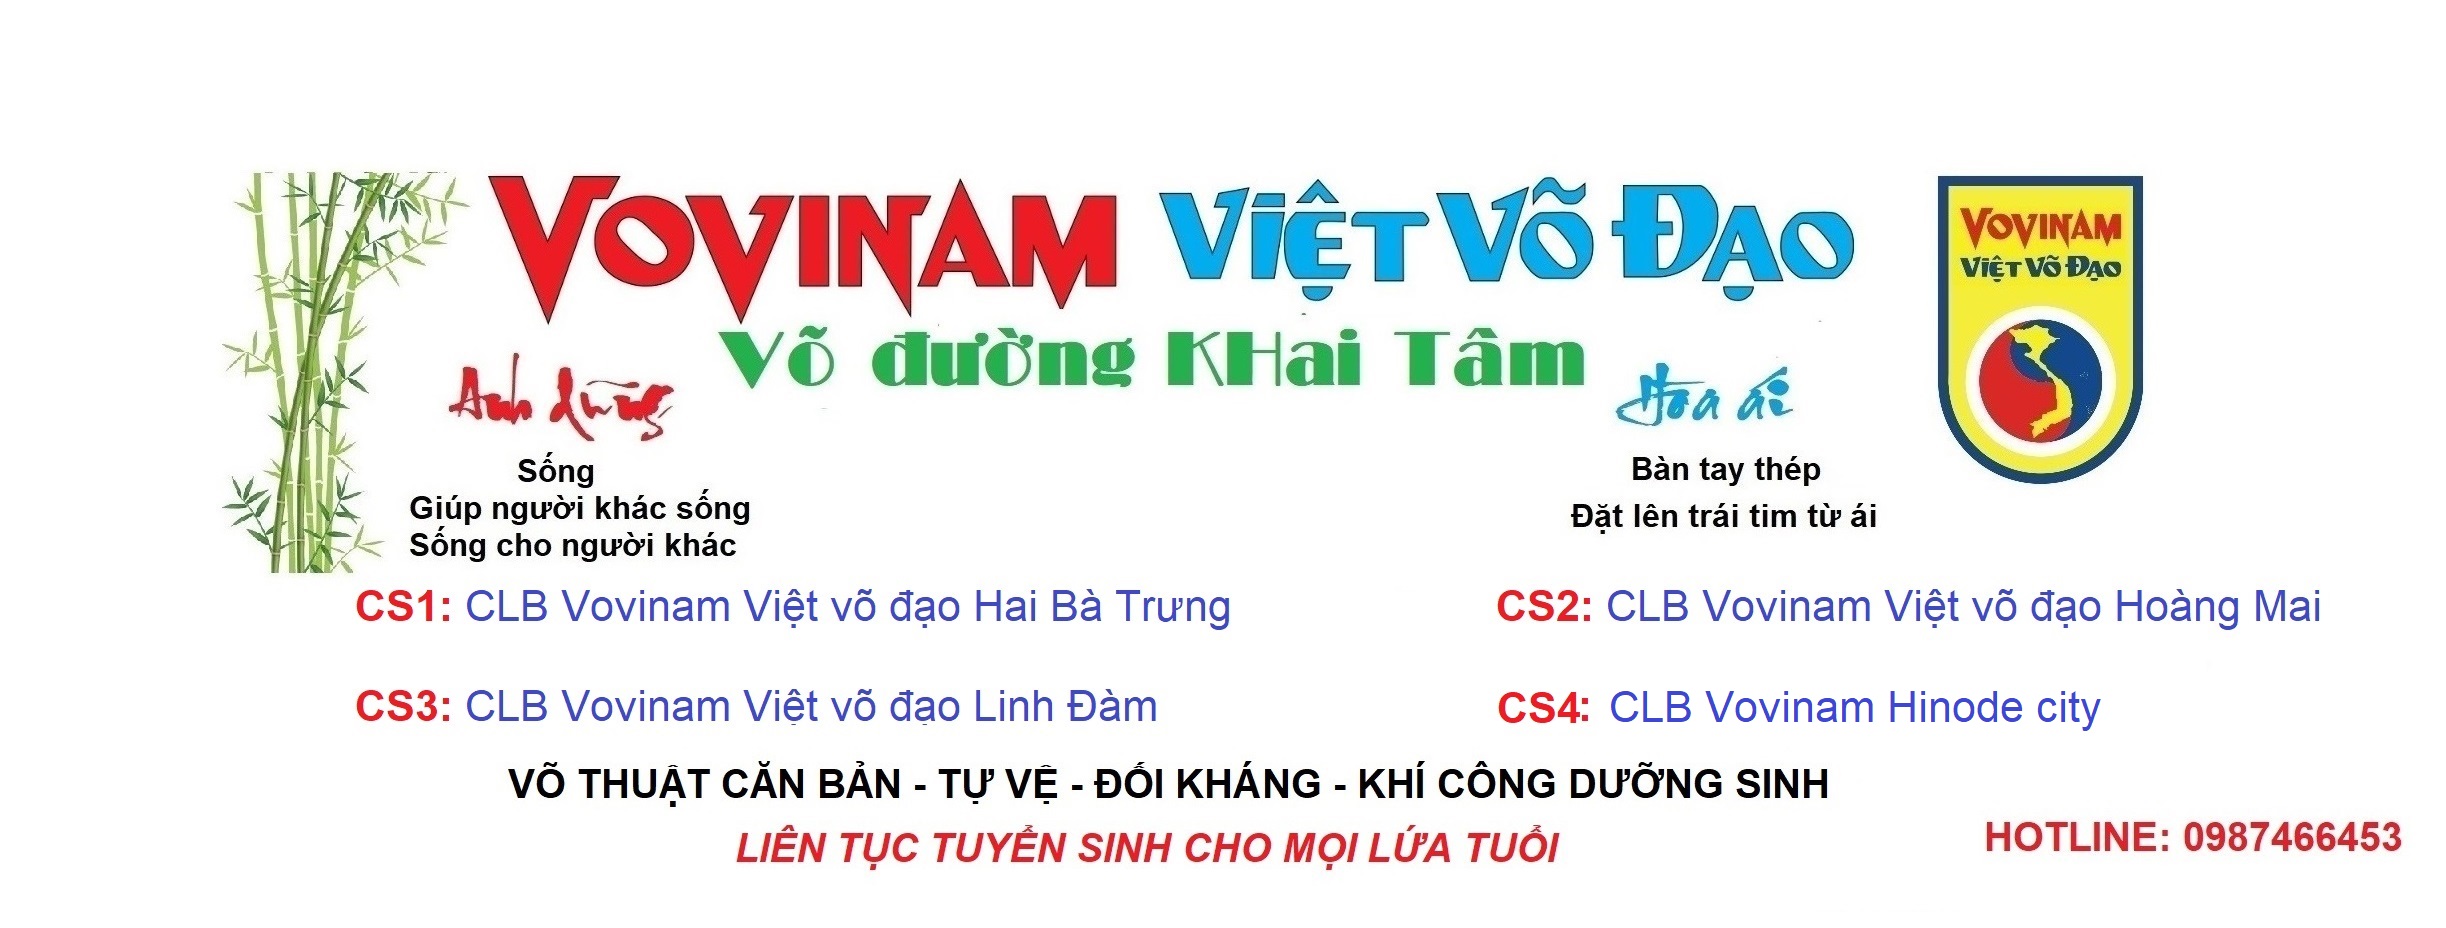 CLB Vovinam Việt võ đạo Hinode city